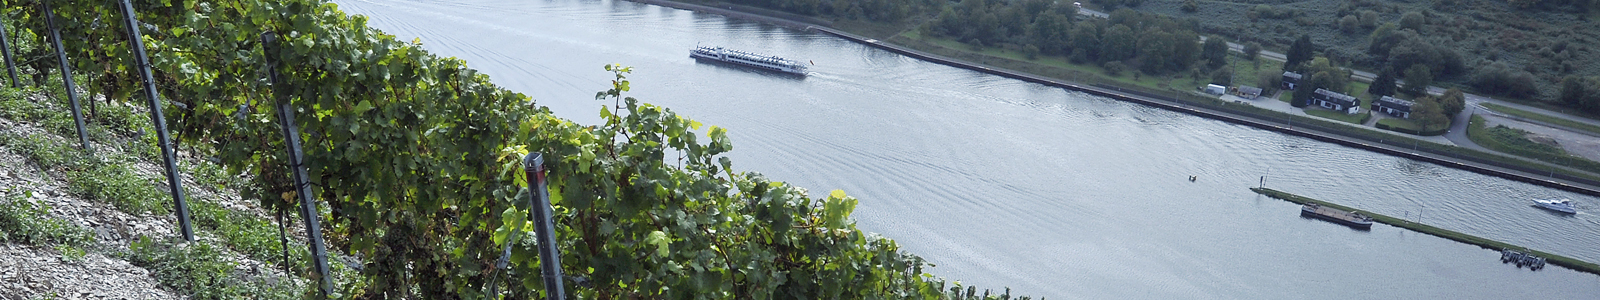 Blick von oben auf den Rhein ©DLR